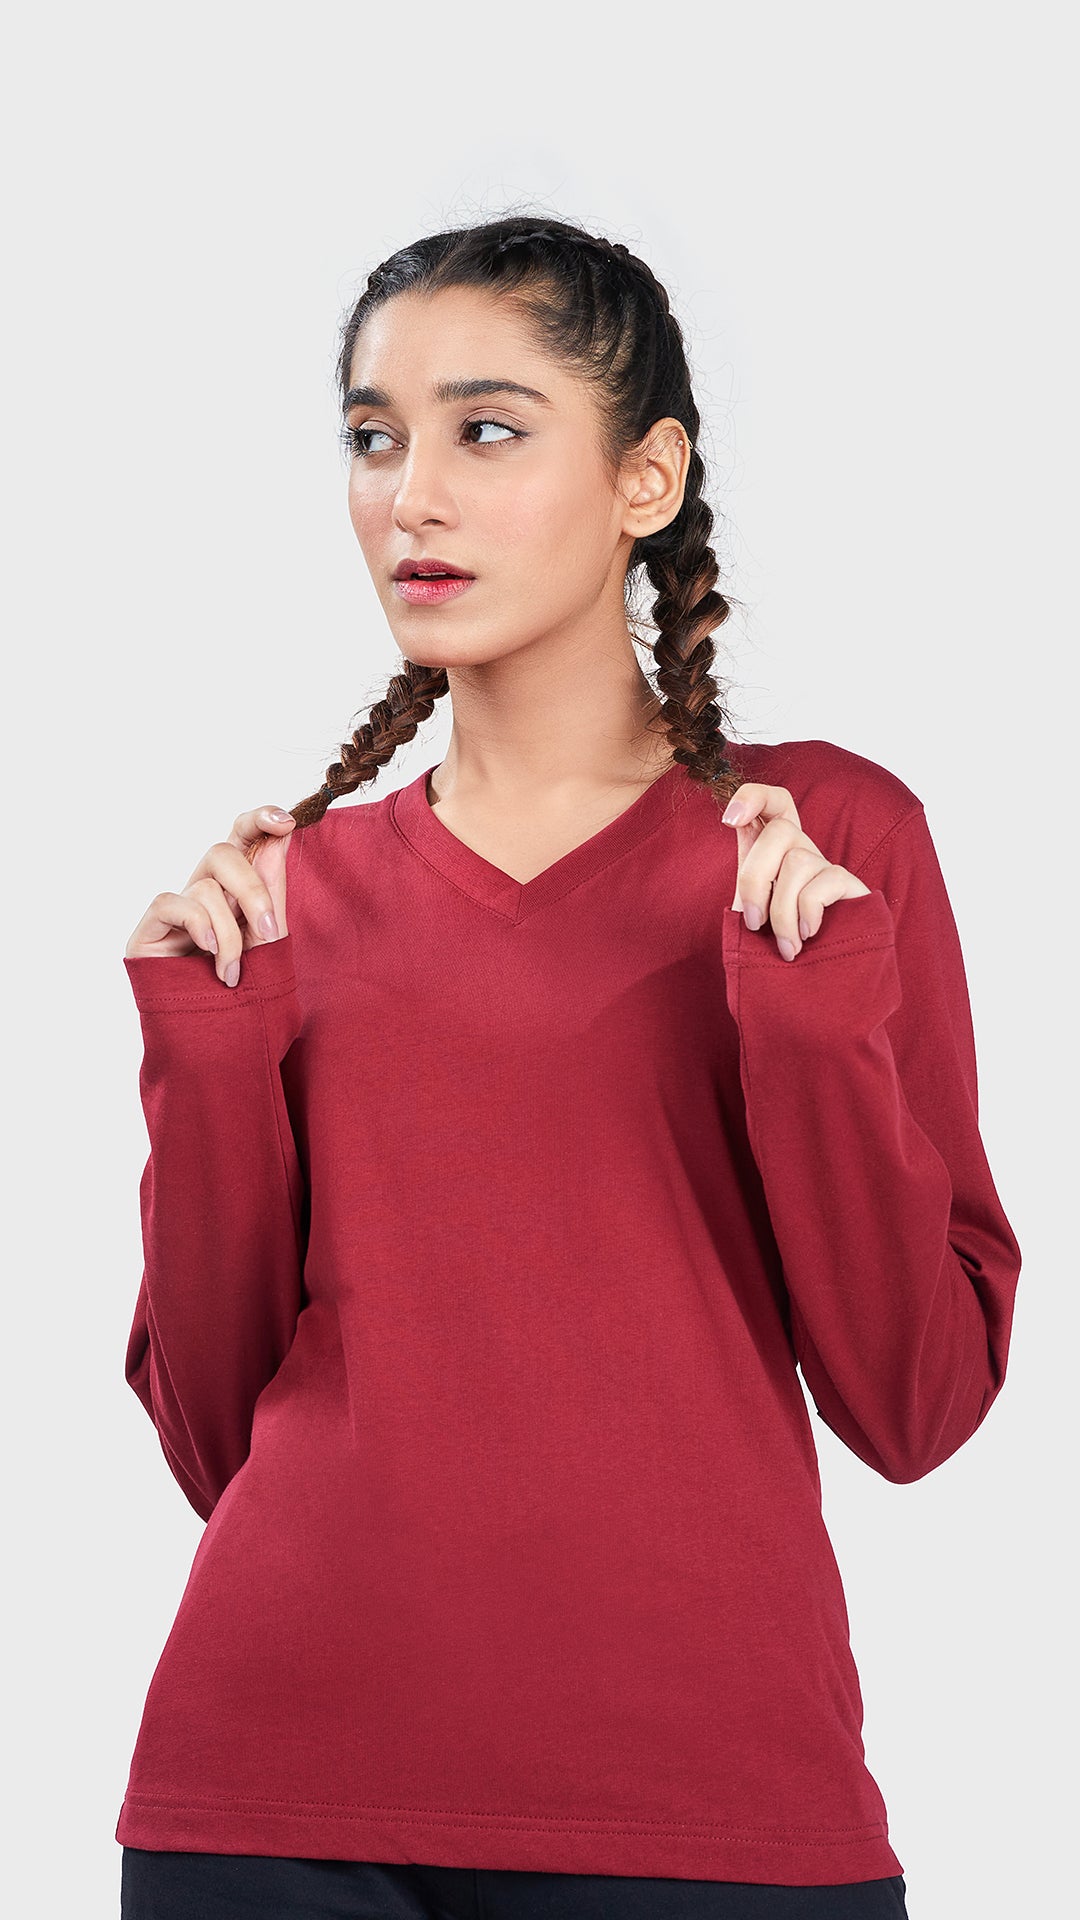 Women's Basic V Full Sleeves T-Shirt